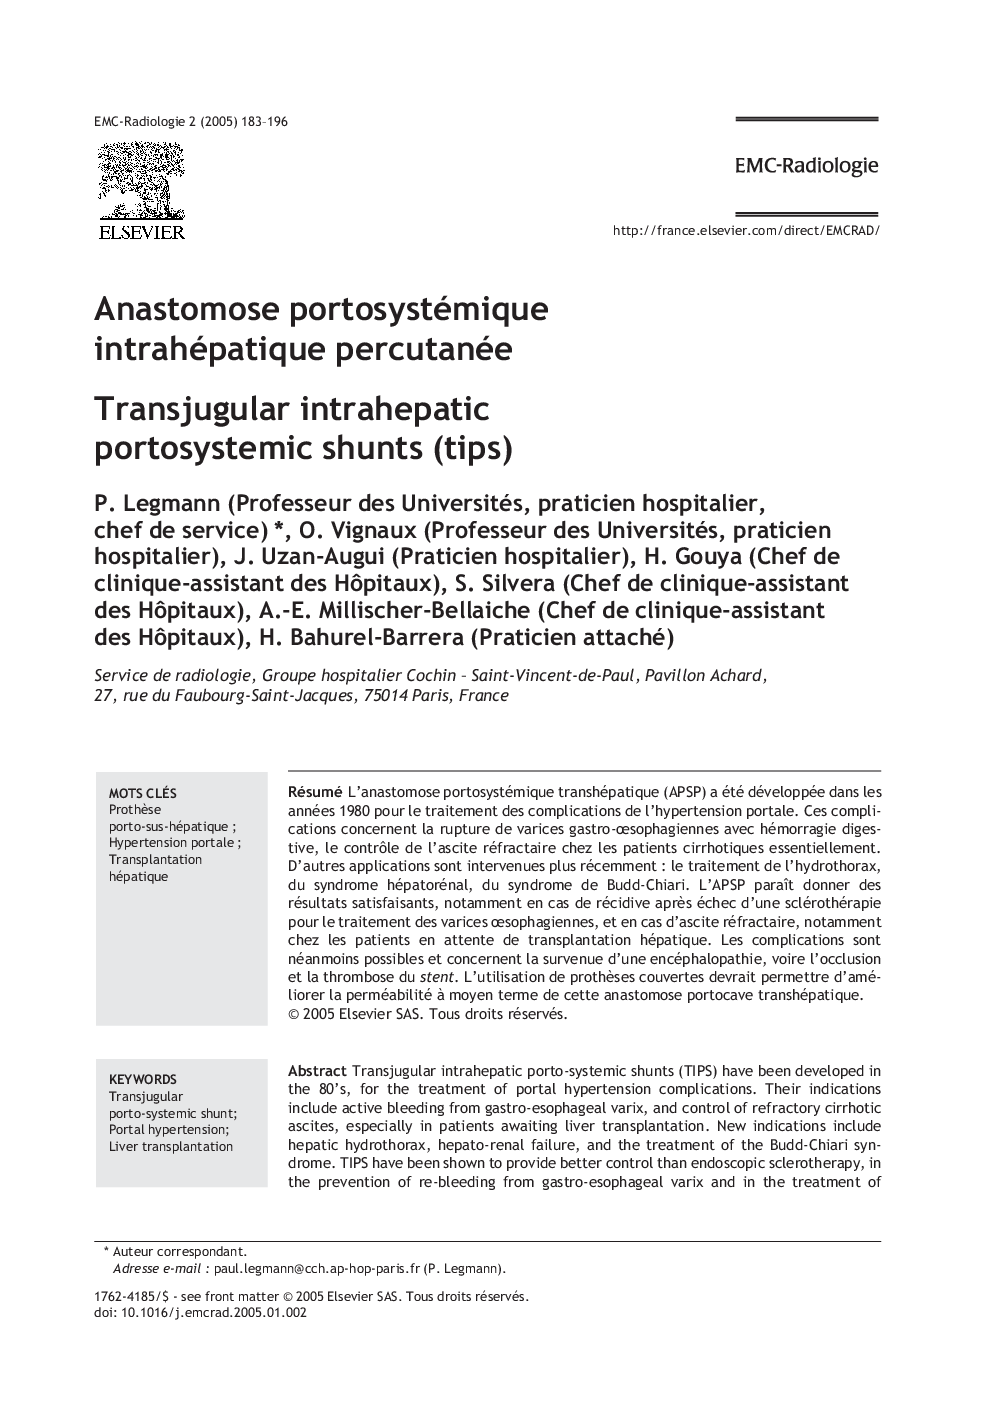 Anastomose portosystémique intrahépatique percutanée